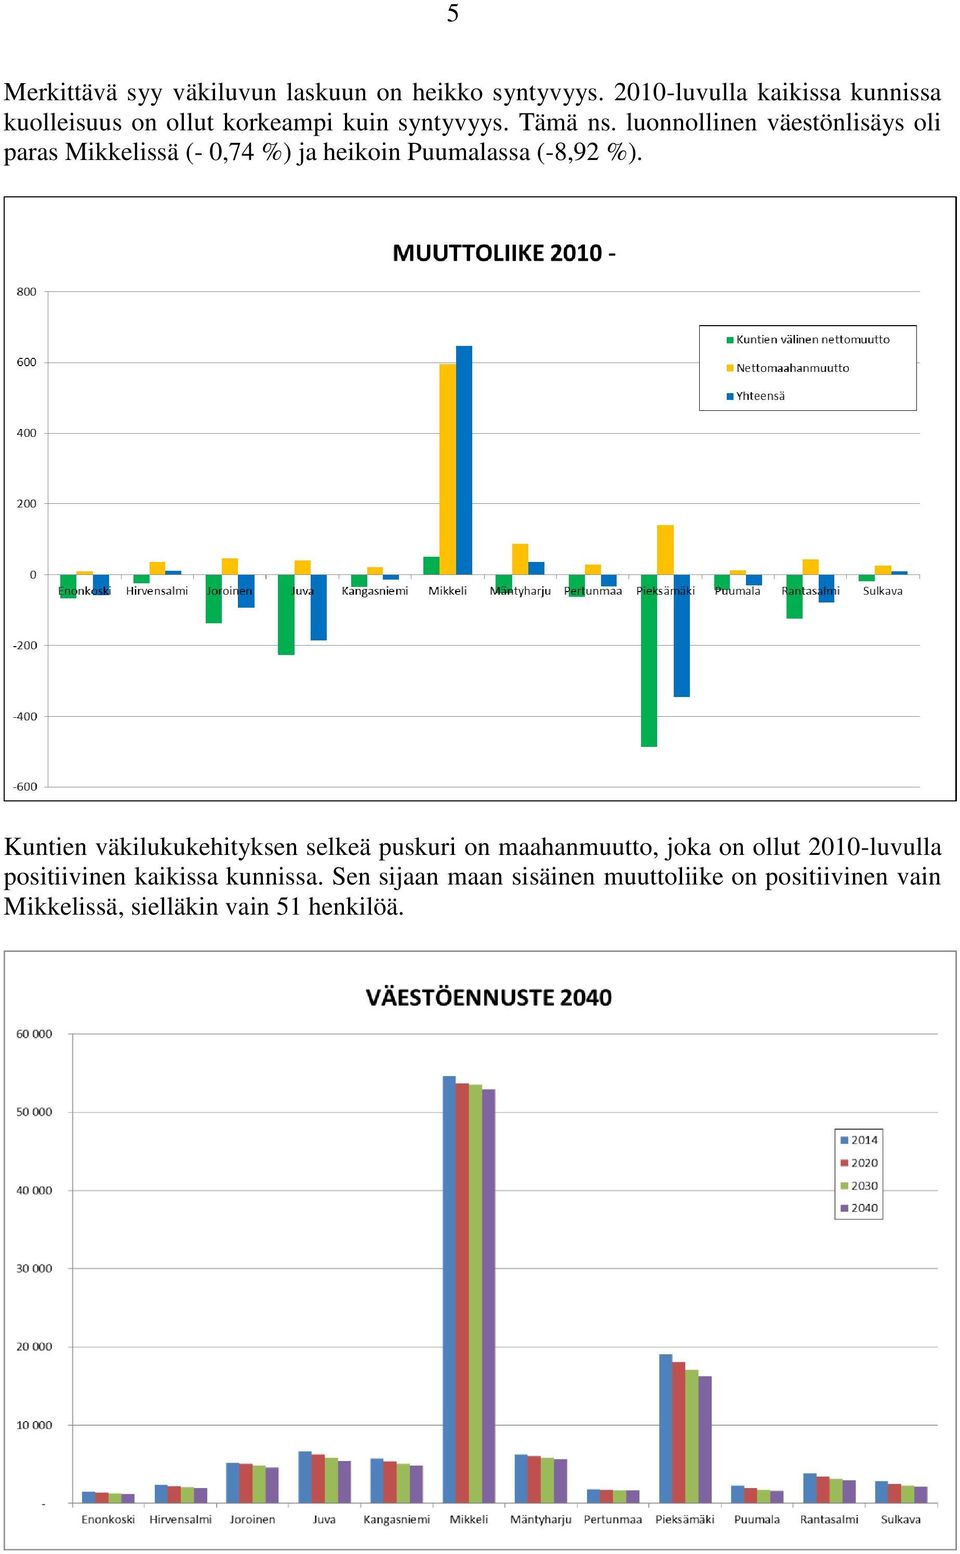 luonnollinen väestönlisäys oli paras Mikkelissä (- 0,74 %) ja heikoin Puumalassa (-8,92 %).